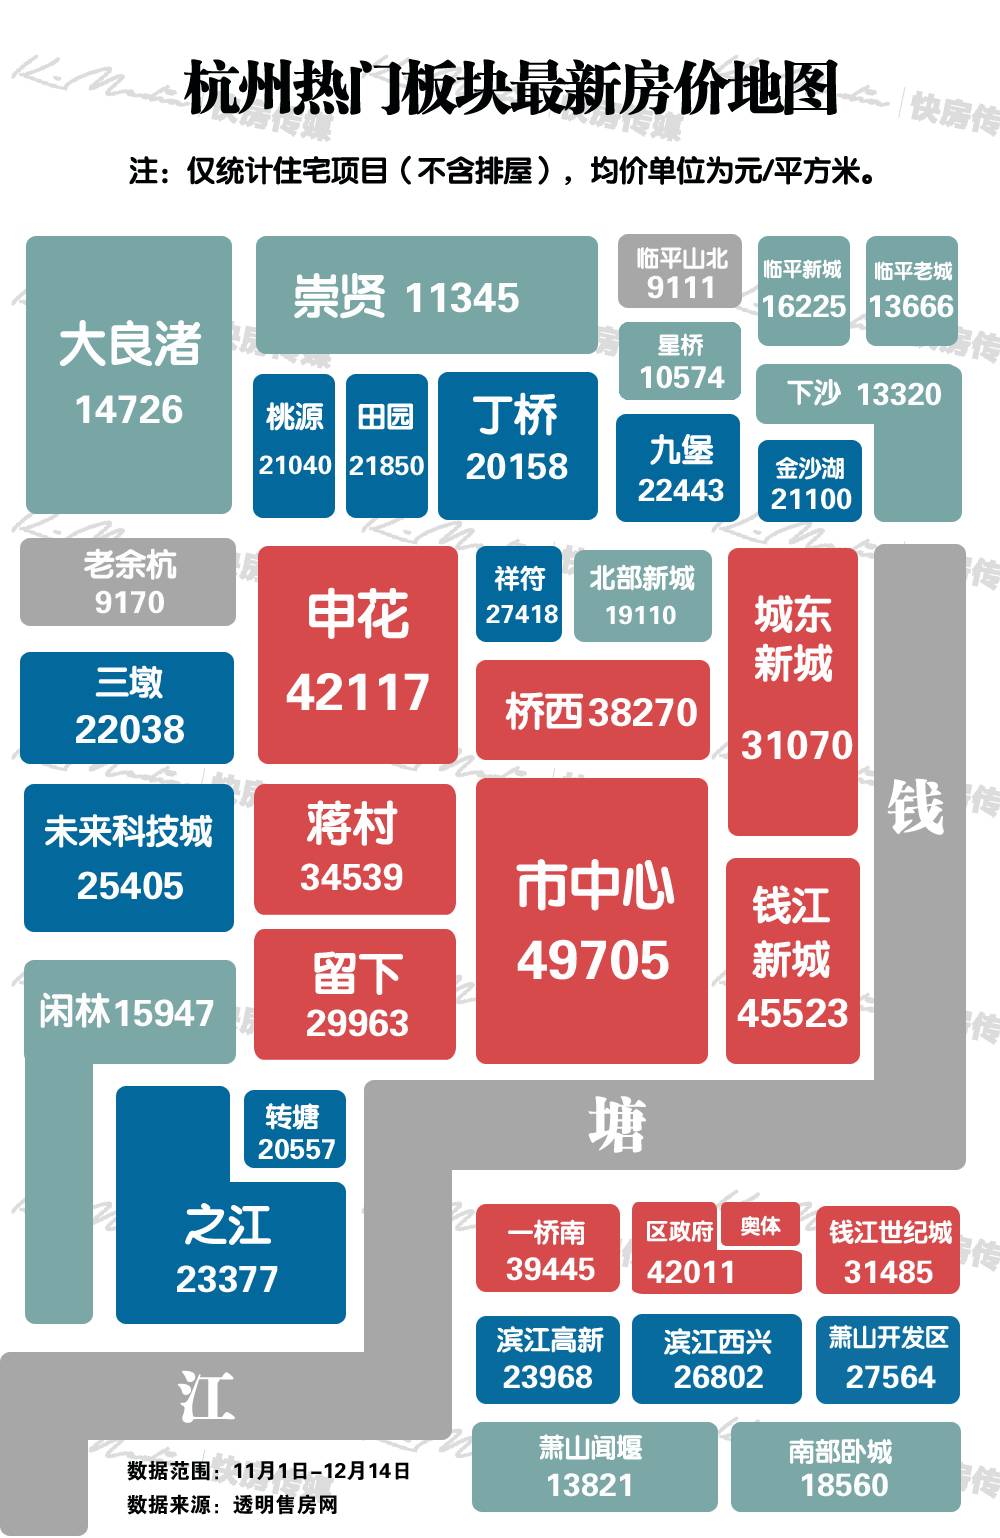 杭州最新房价地图出炉!滨江区政府板块均价破